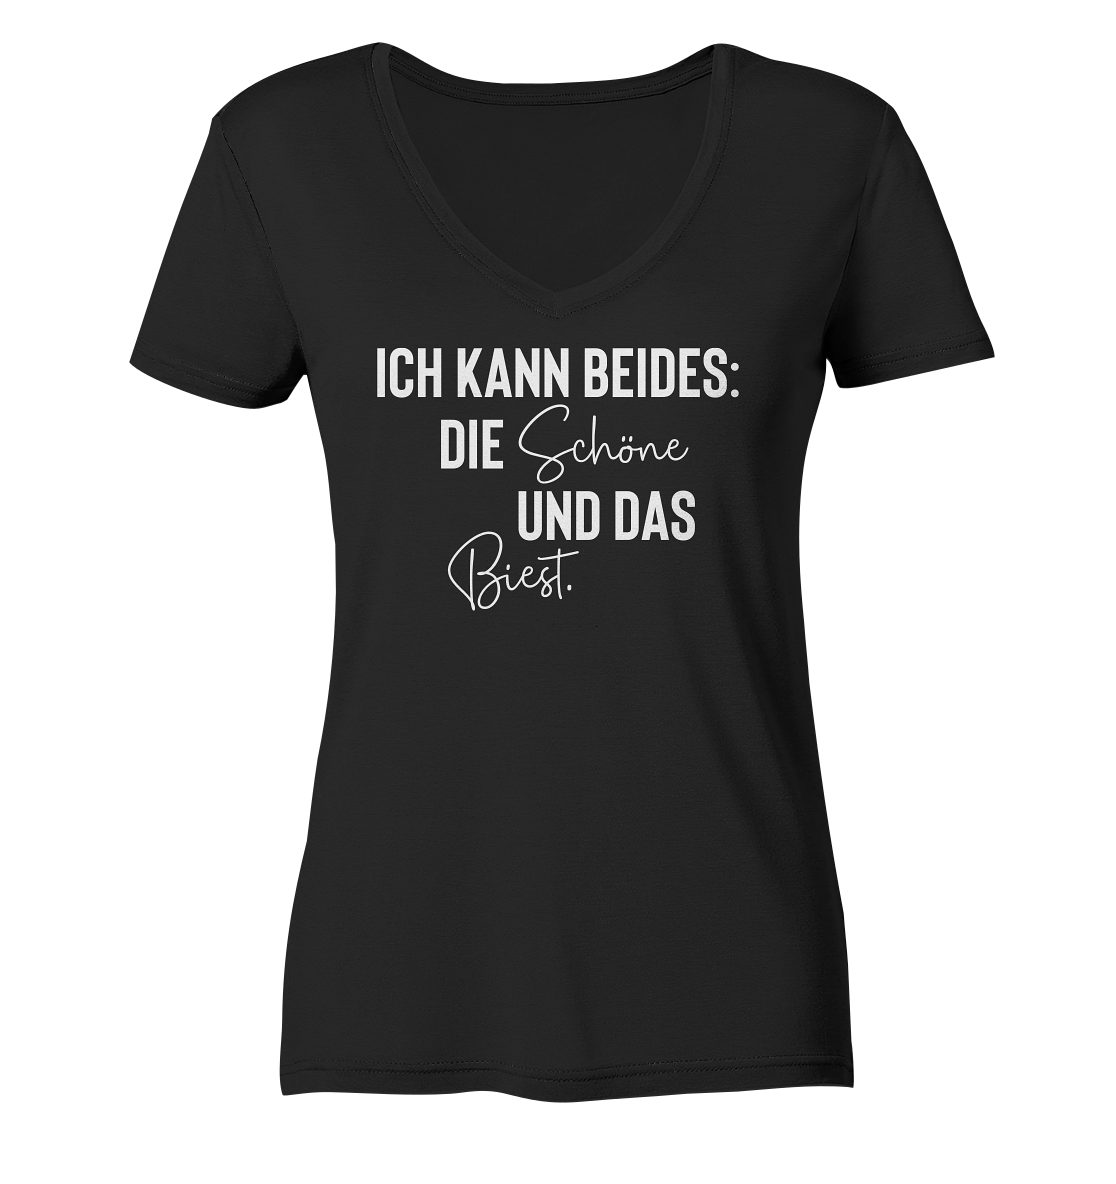 "Ich Die kann Frauen Farbbrillianz Hohe Shirt Bedruckt beides: V-Neck Biest" Deutschland, - Hohe Schöne RABUMSEL und T-Shirt in das Waschbeständigkeit,